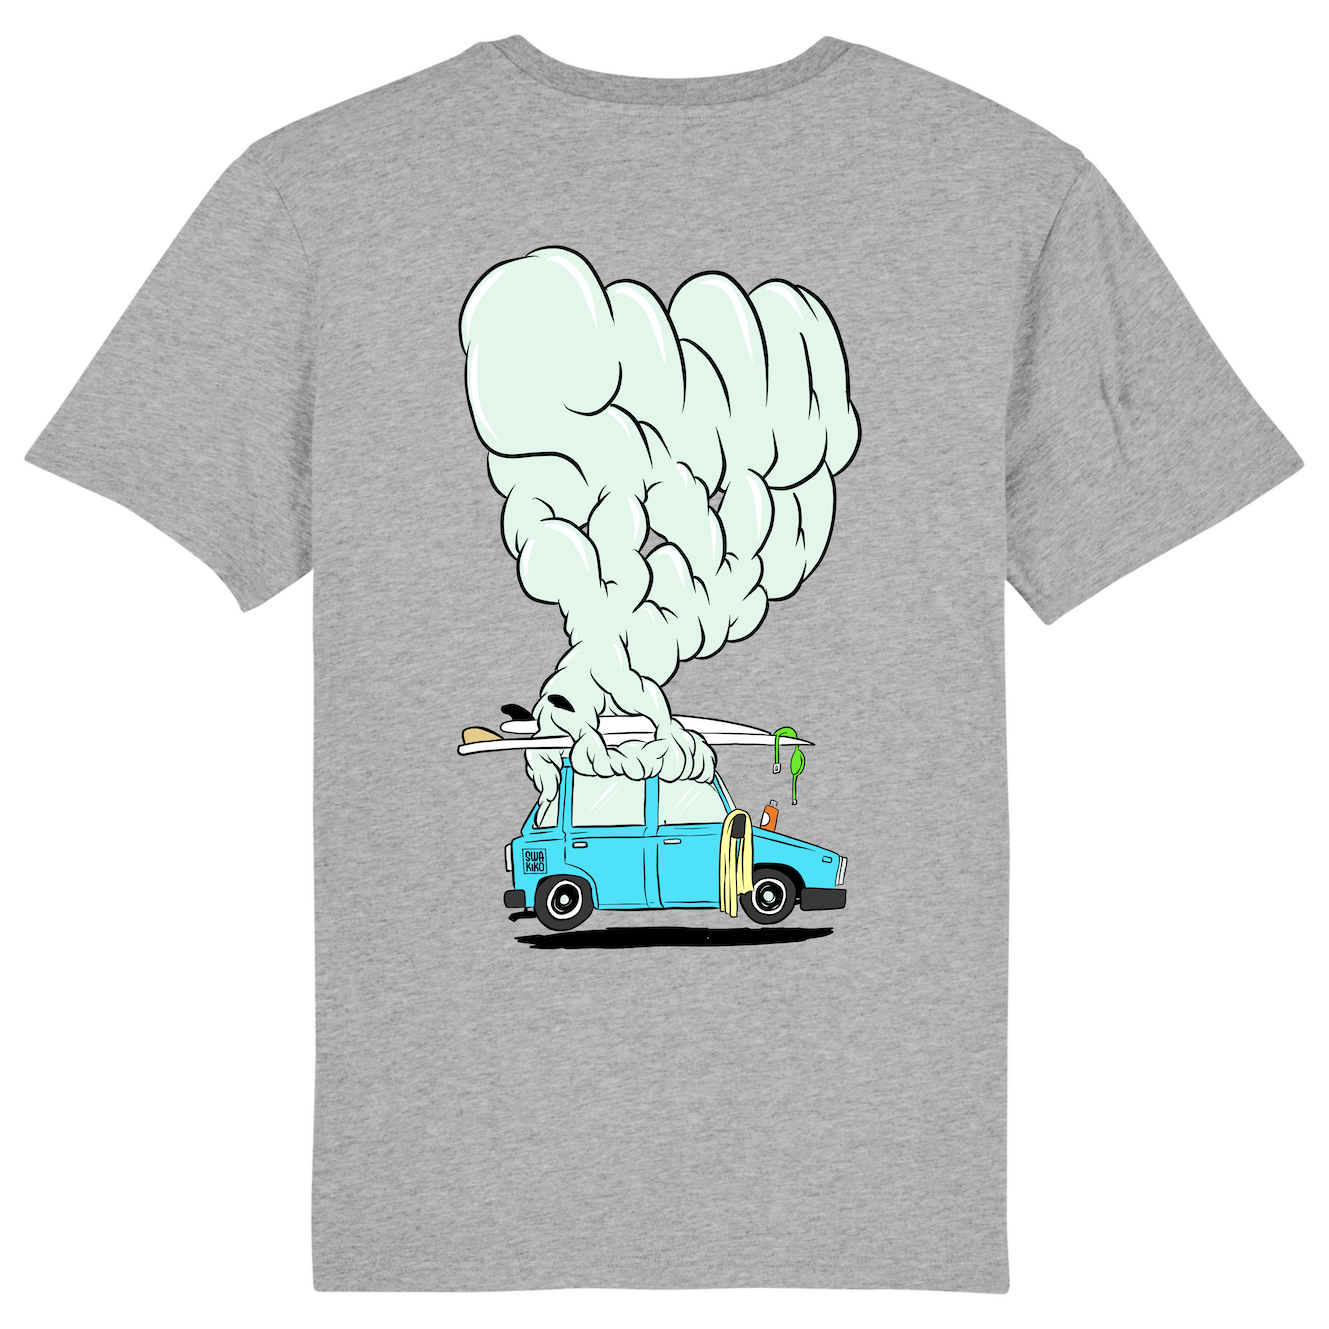 Grijs Surf t-shirt met design van een rokende auto van de stoke met surfboard op dak